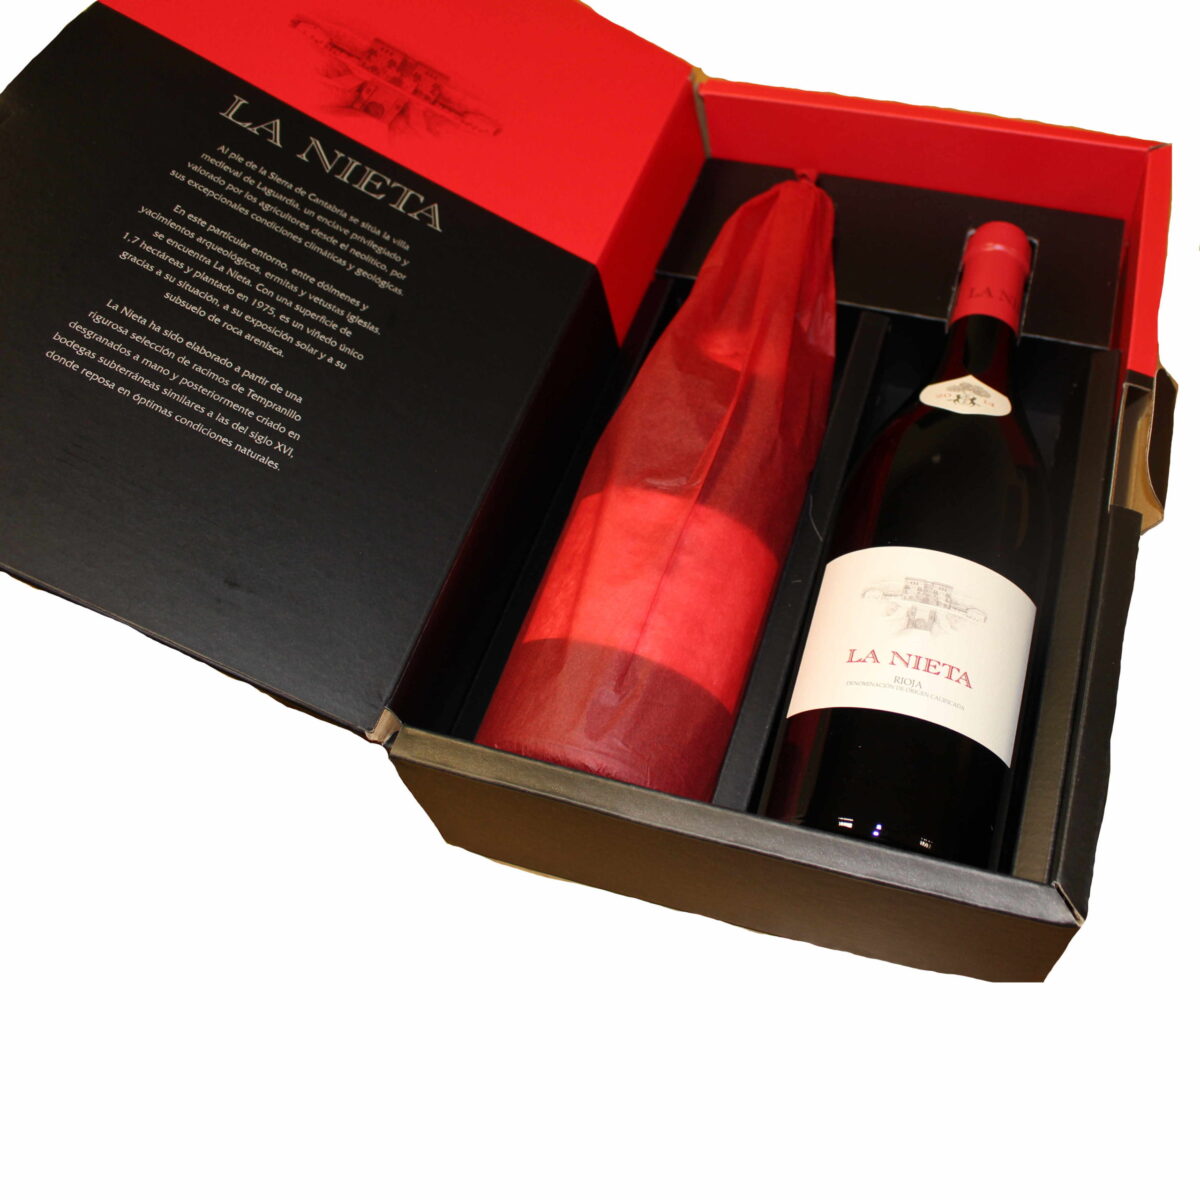 La Nieta D.O. Rioja Case of 2 bottles